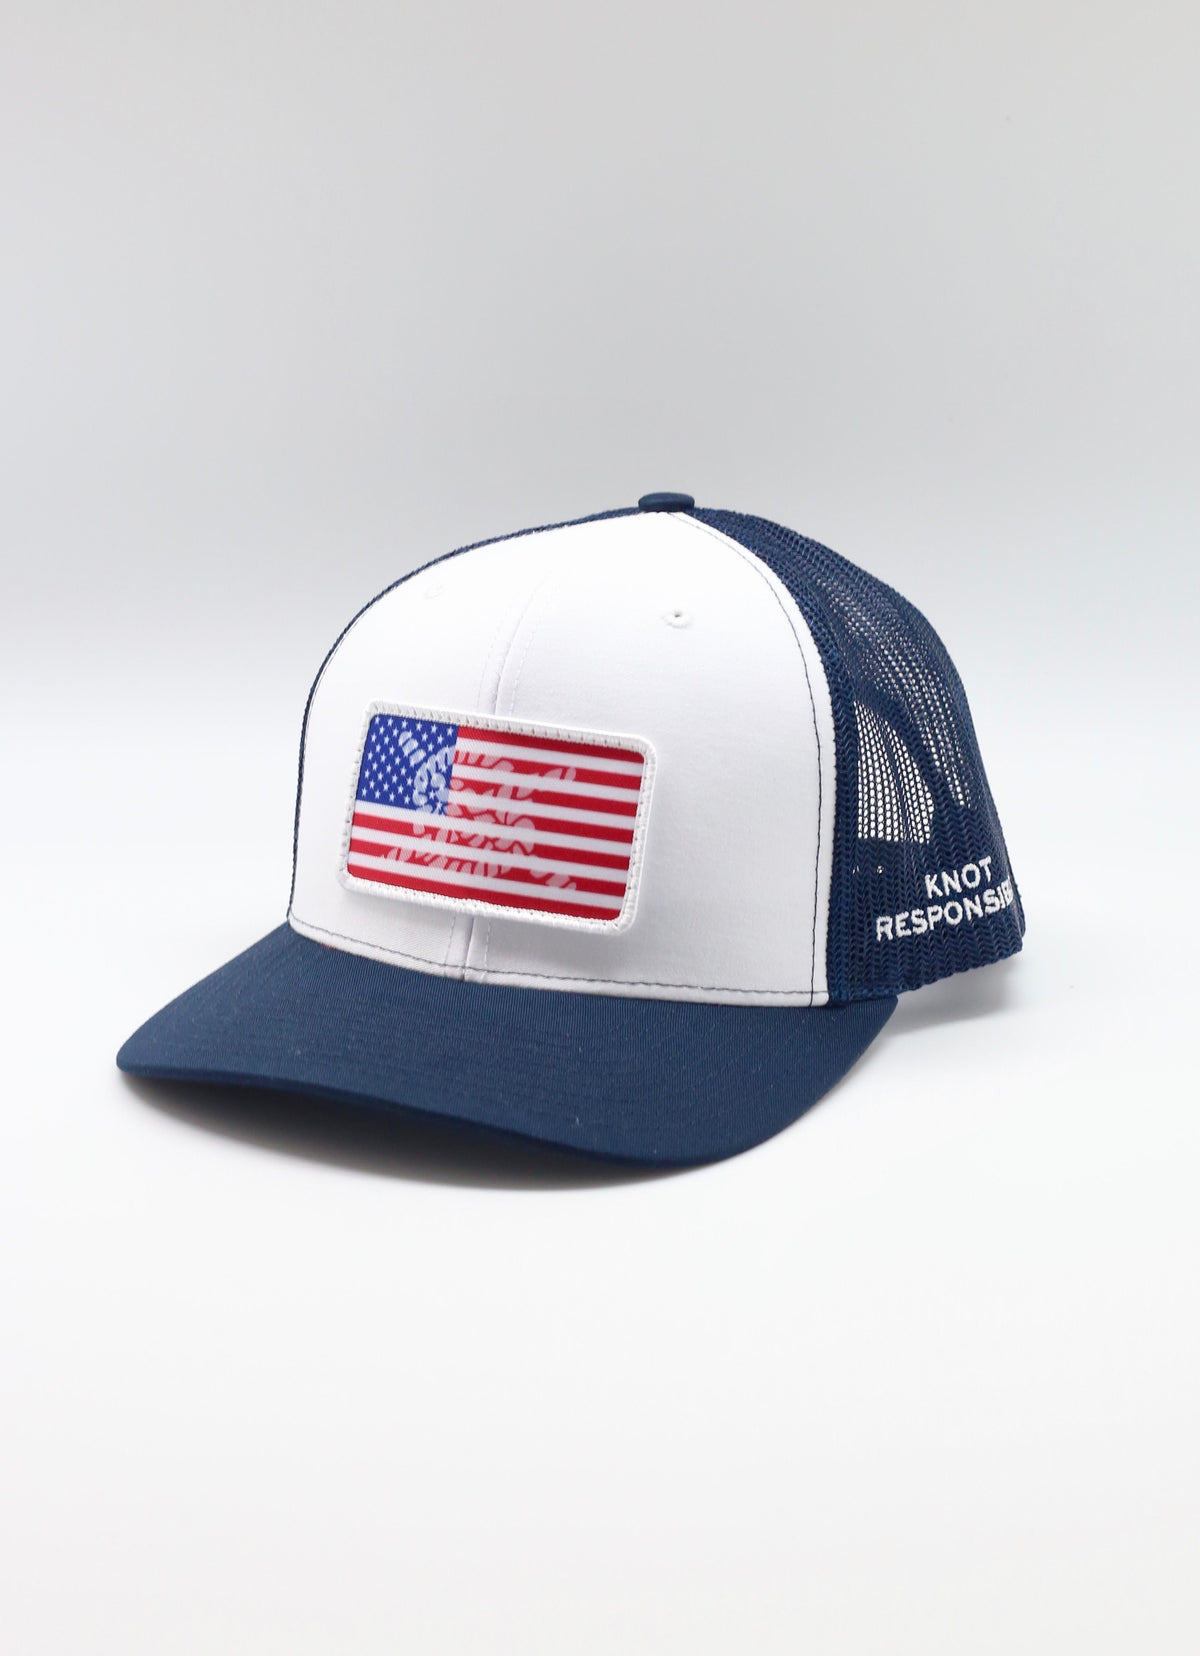 USA Patch Original Trucker Hat - Navy/White